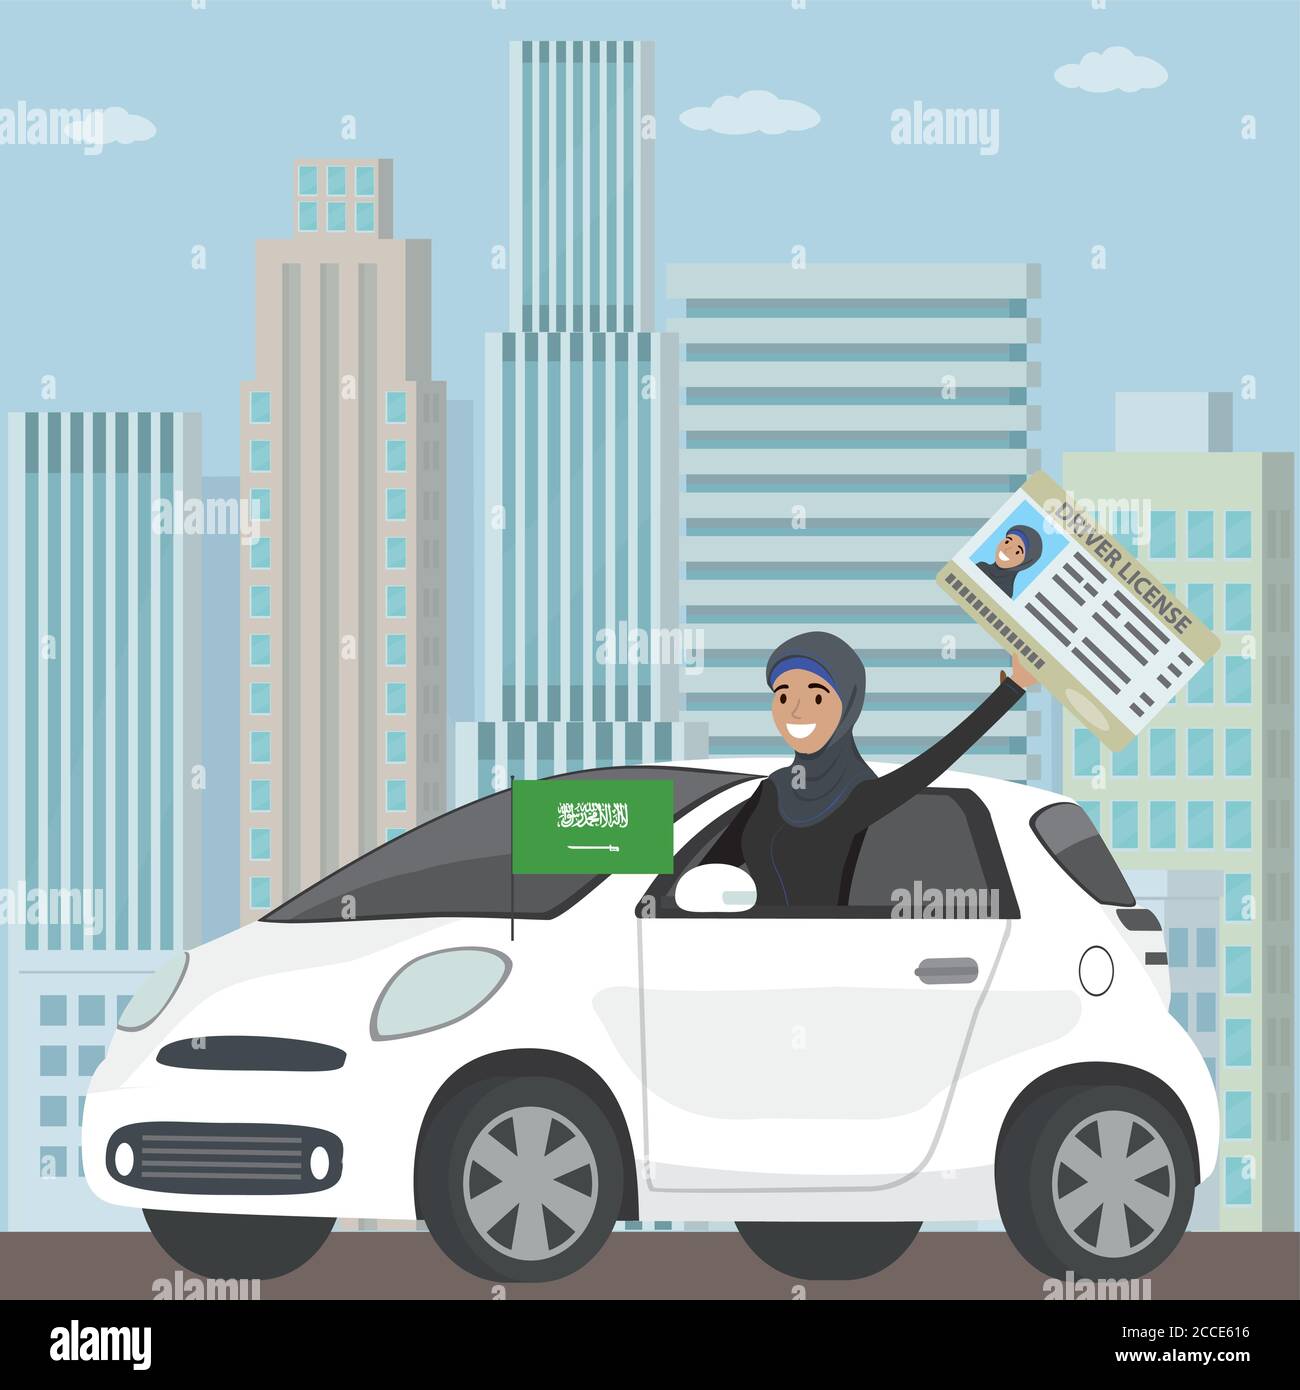 Happy Arab Girl o Saudita donna alla guida di un auto, patente di guida in mano, immagine vettoriale piatta Illustrazione Vettoriale